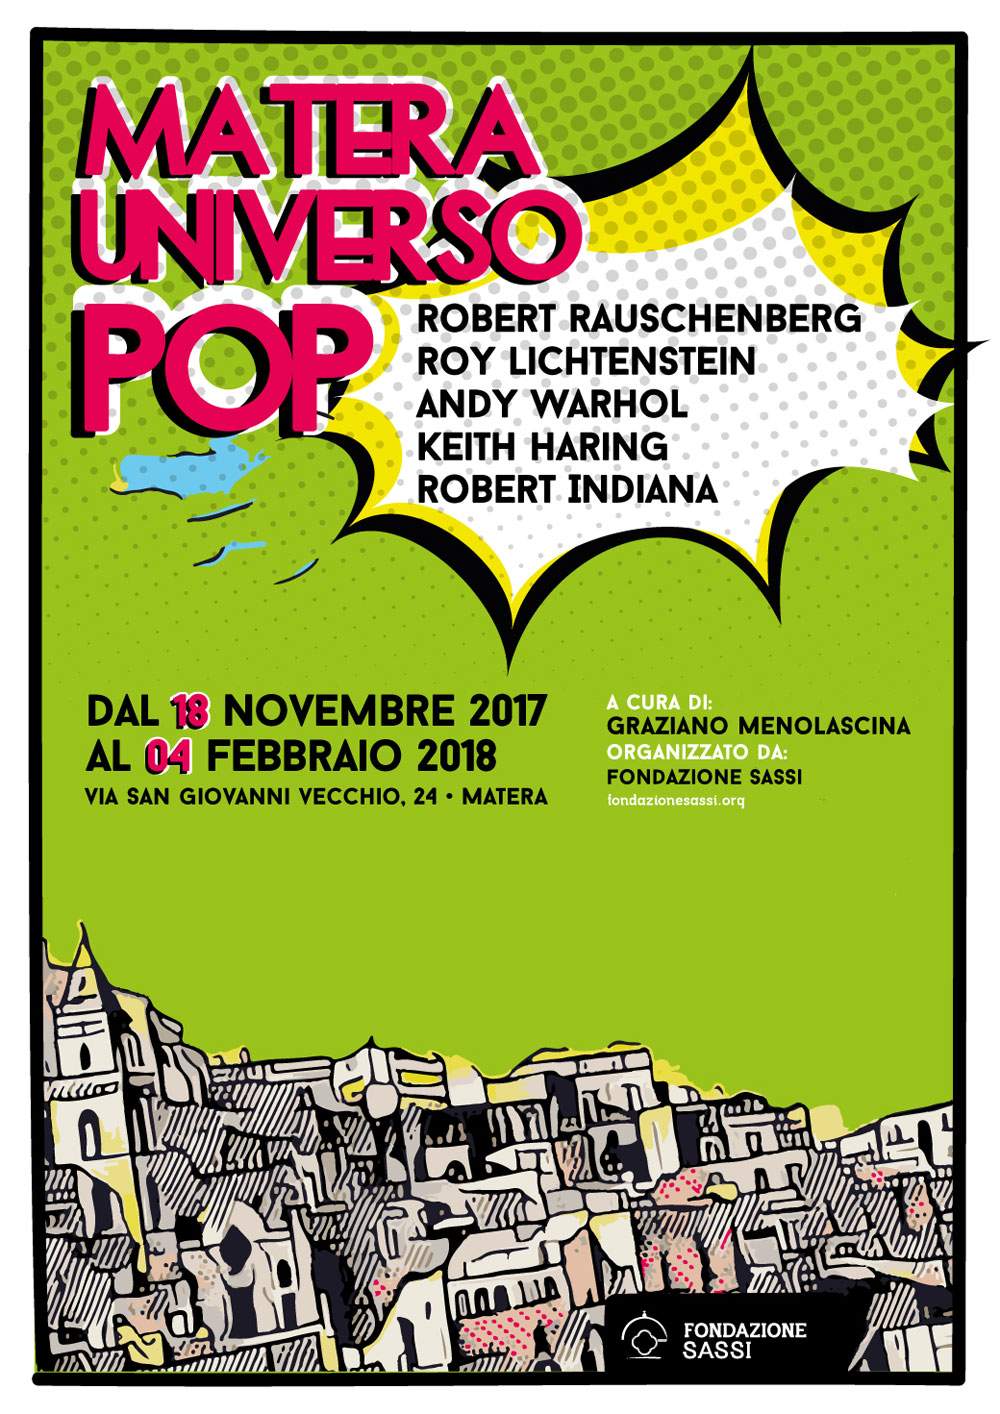 Matera Universe Pop : exposition d'œuvres de Pop Art à la Fondation Sassi